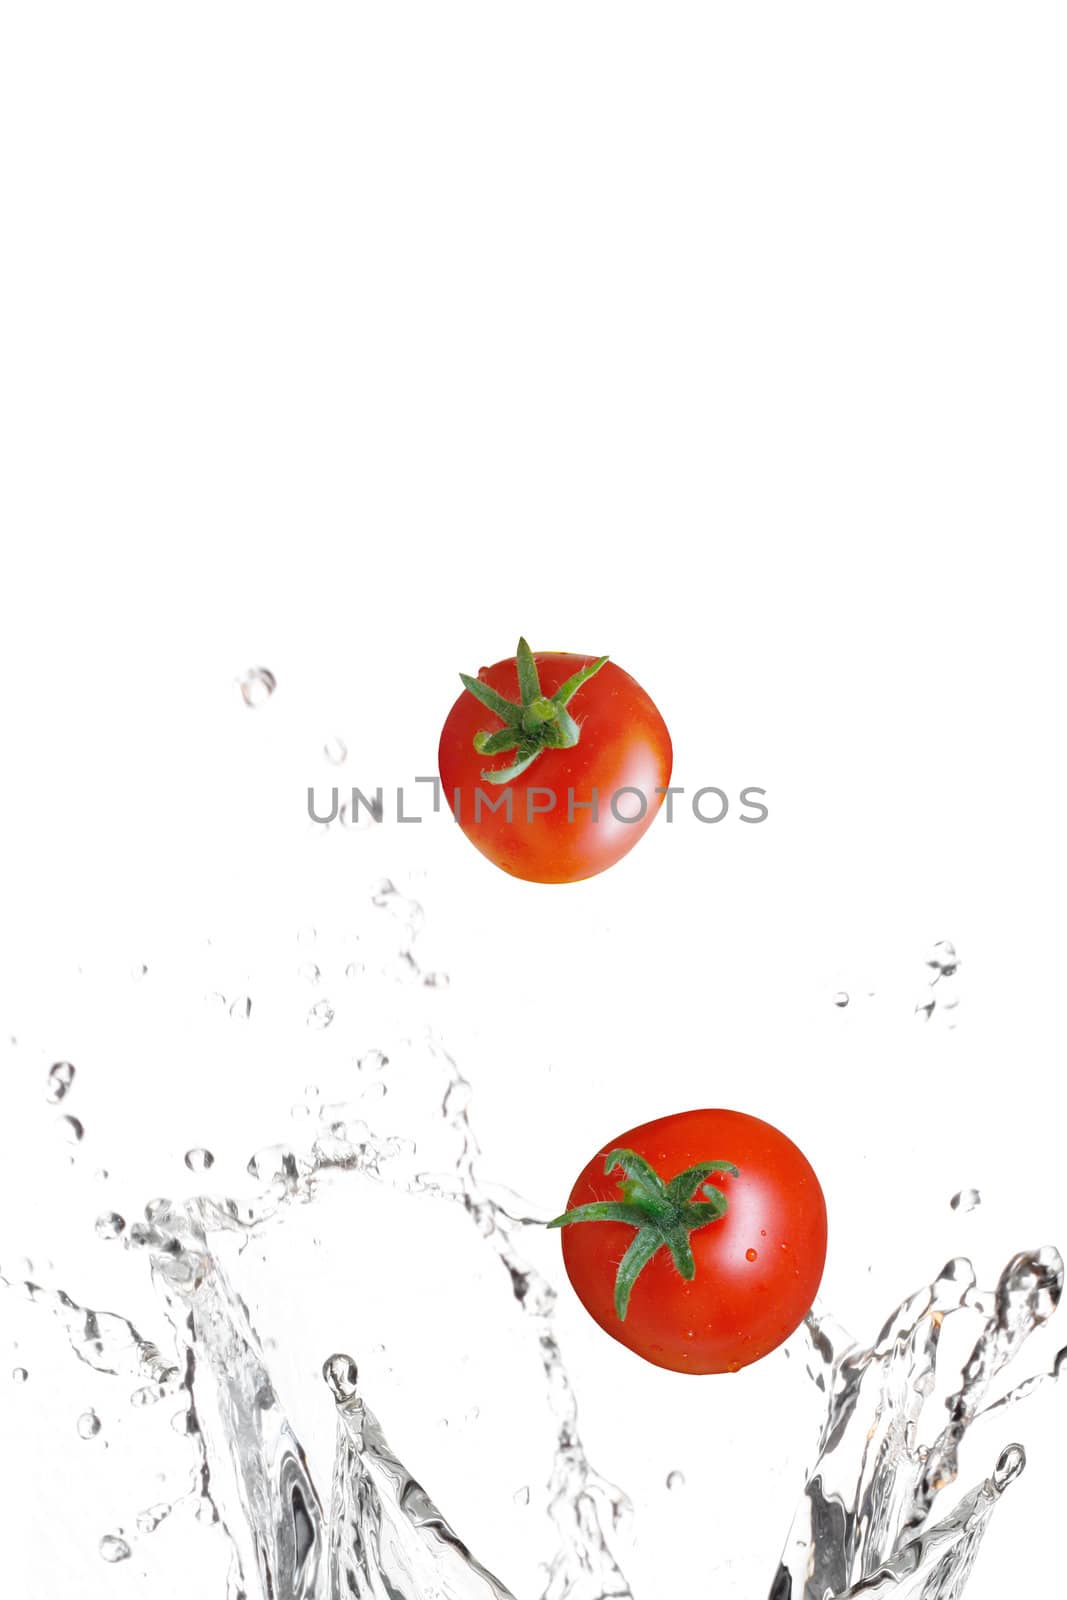 Tomatoes by leeser